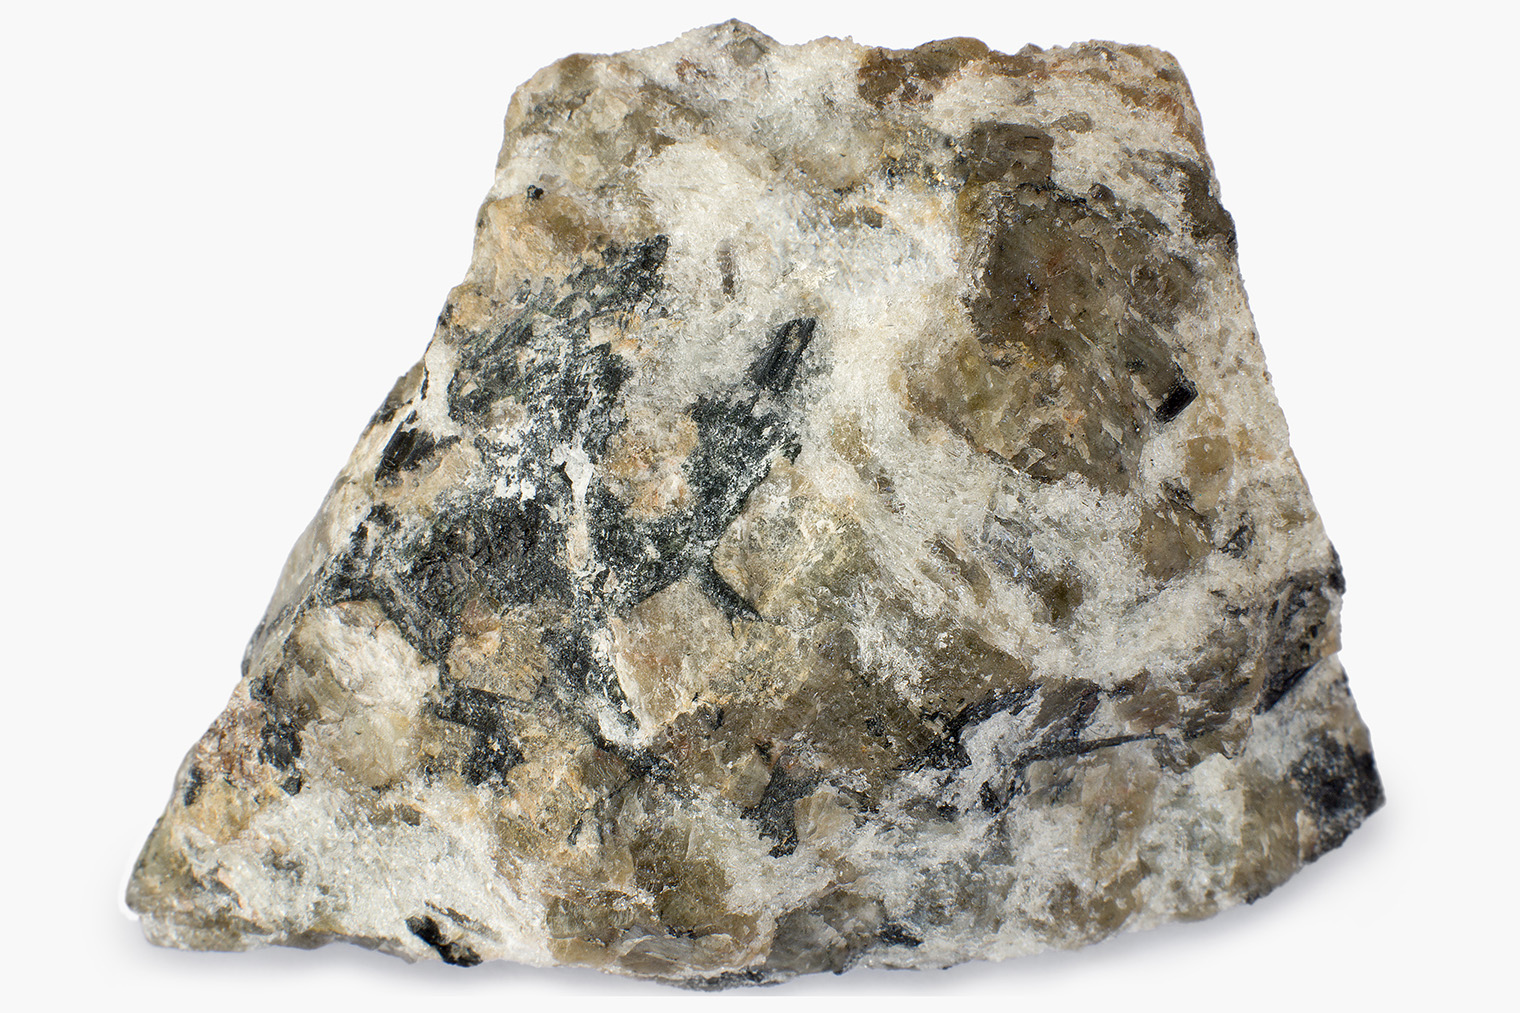 Так выглядит минерал апатит, из которого производят фосфатные удобрения. Фотография: Aleksandr Pobedimskiy / Shutterstock / FOTODOM